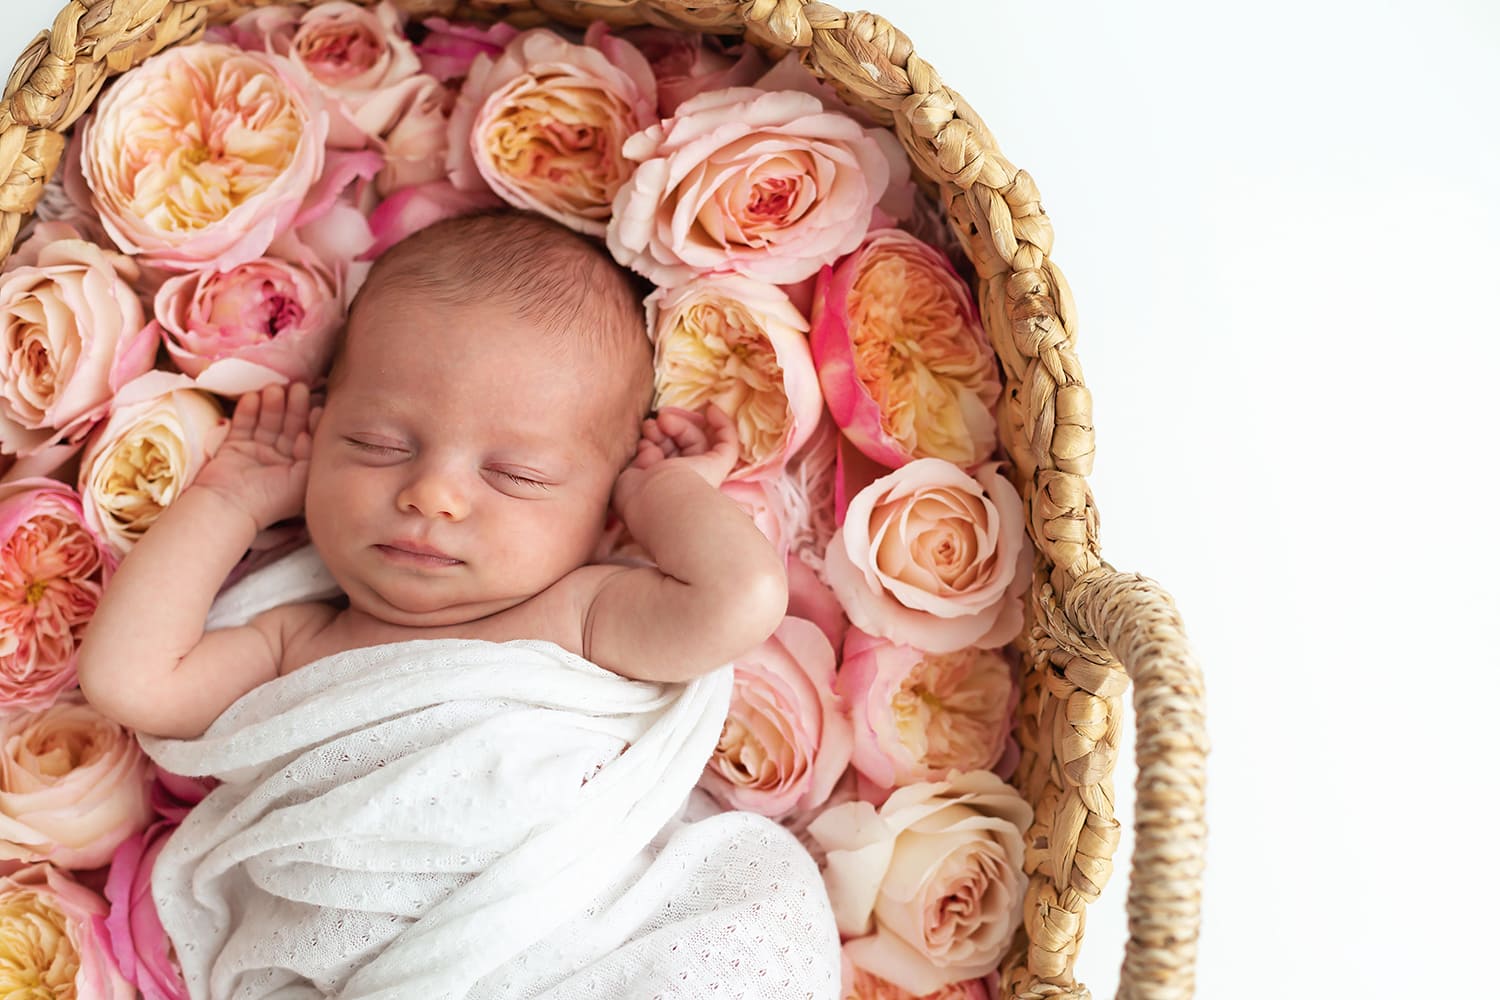 Séance photo bébé avec David Austin Roses